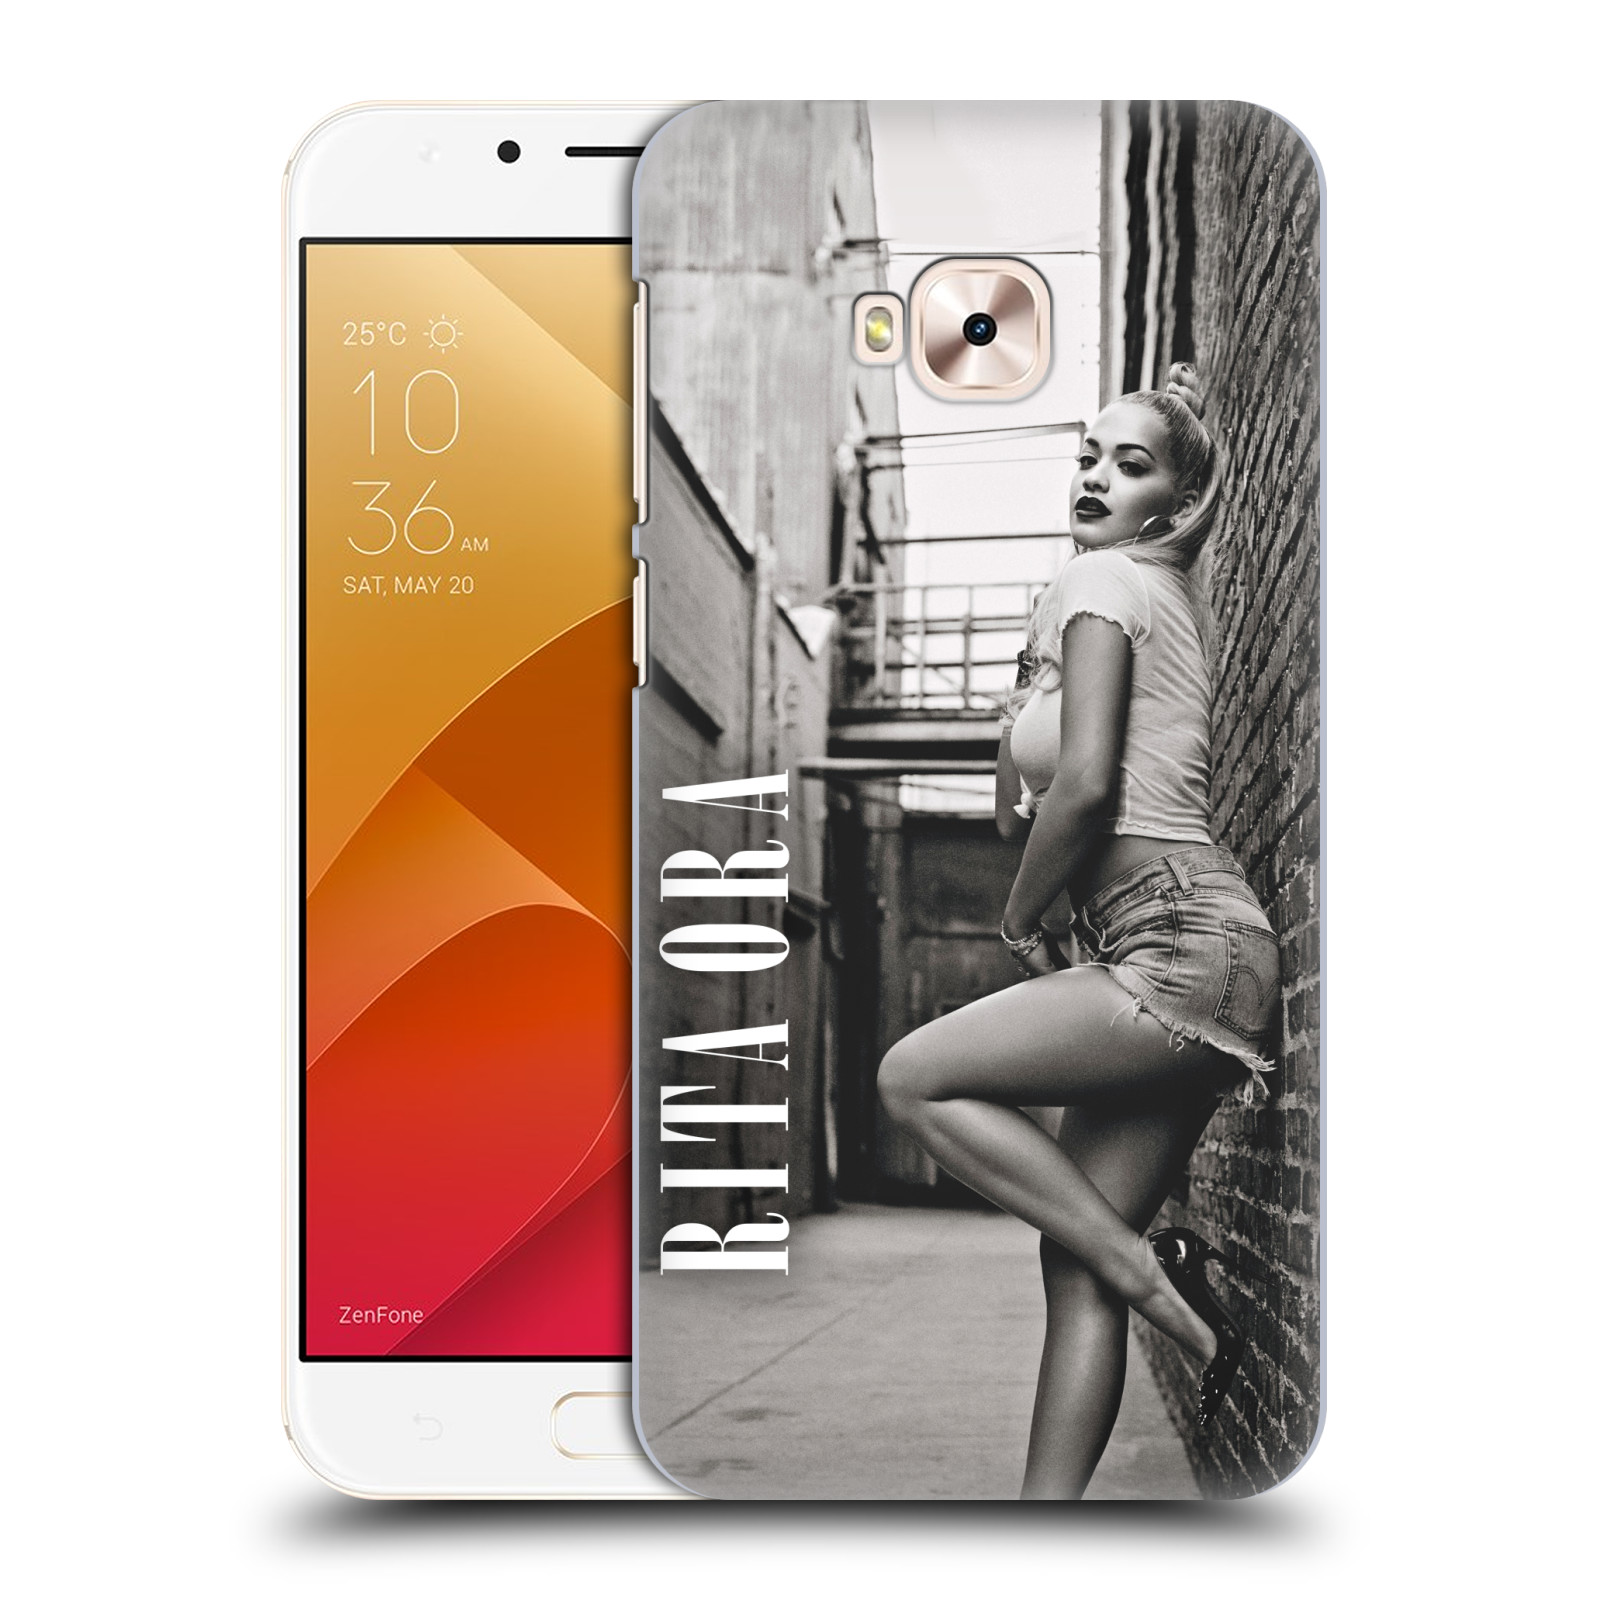 HEAD CASE plastový obal na mobil Asus Zenfone 4 Selfie Pro ZD552KL zpěvačka Rita Ora foto černobílá